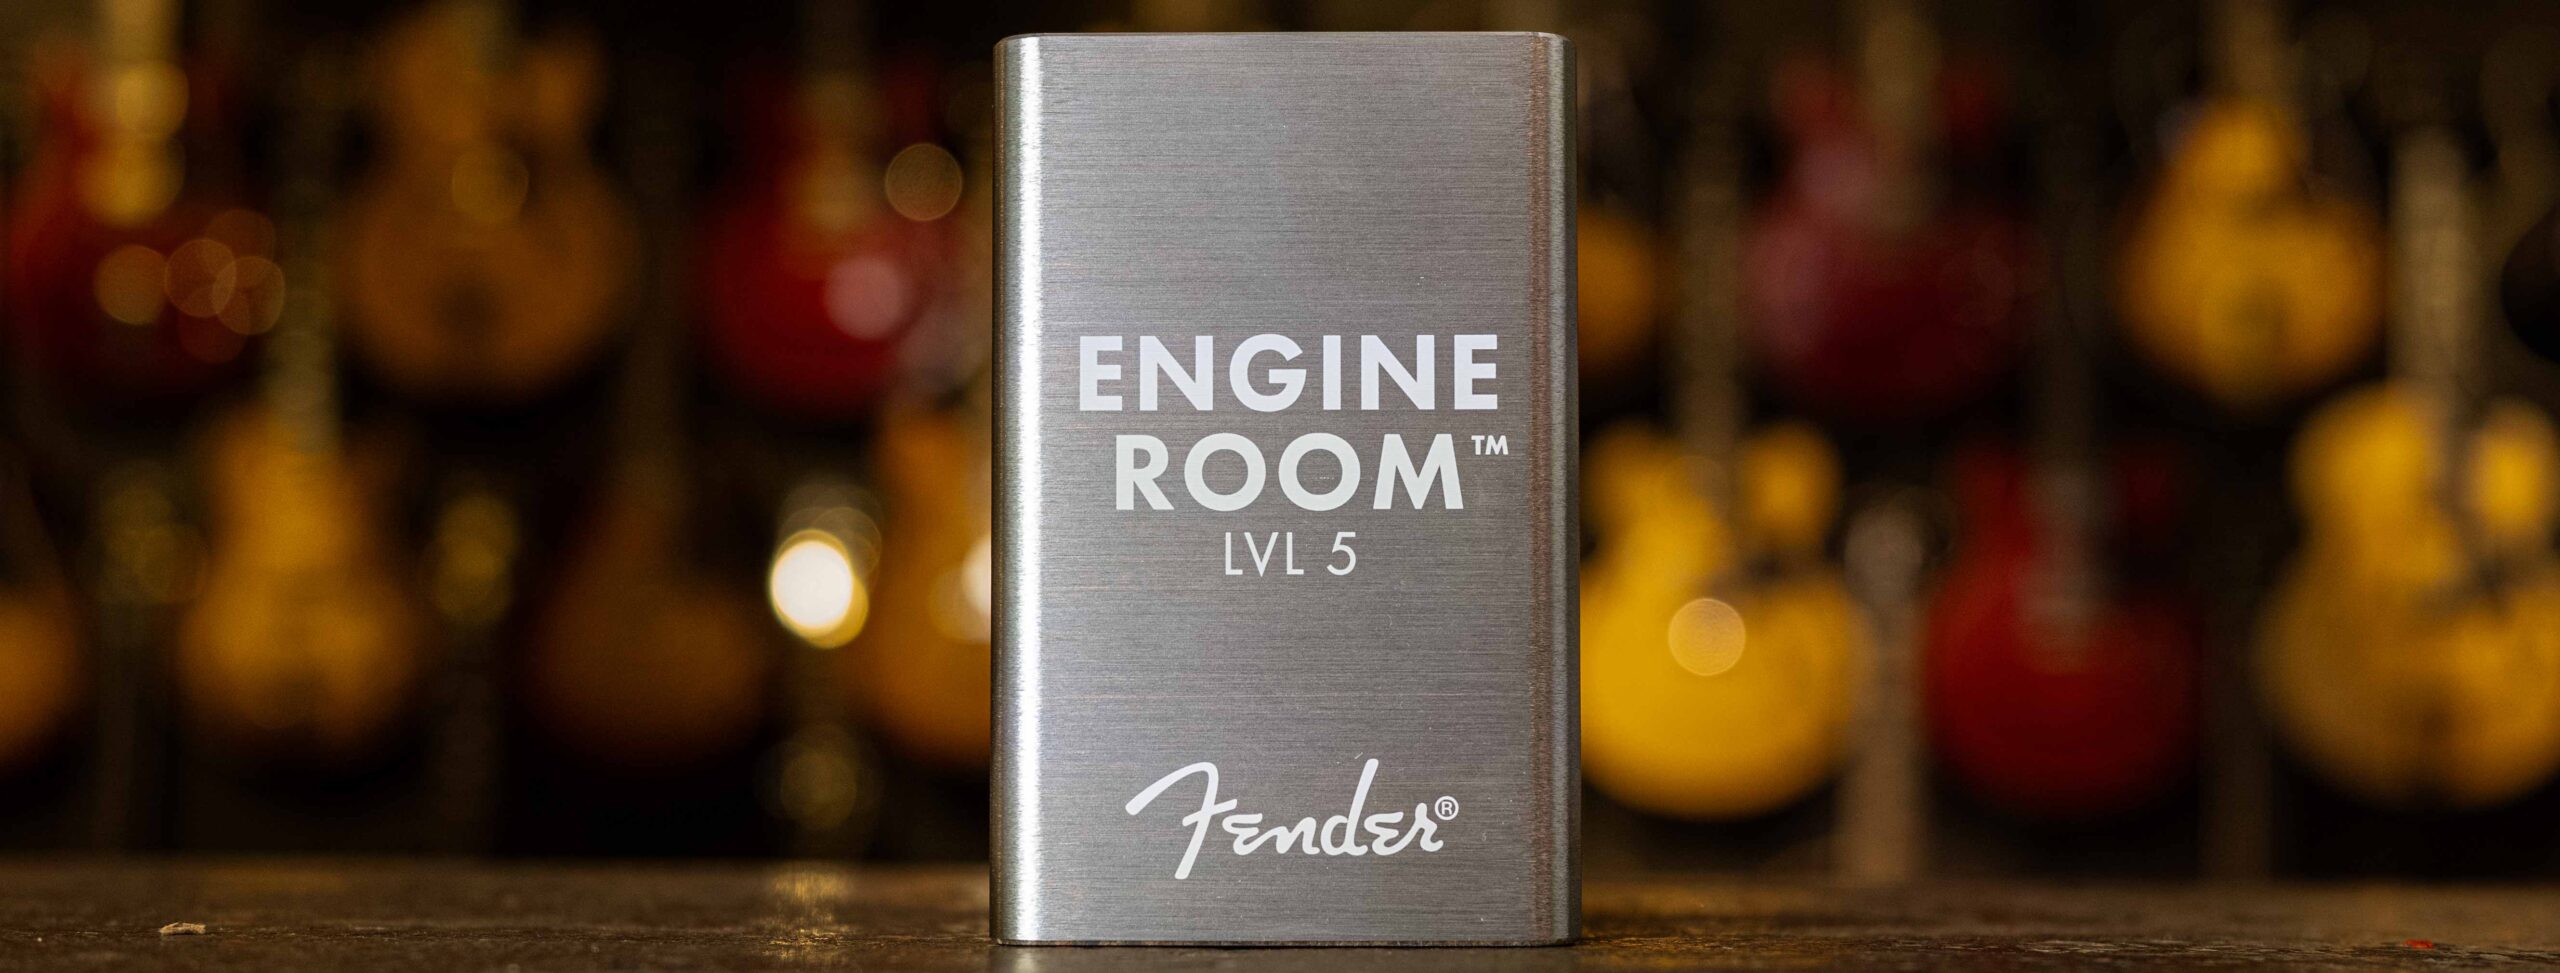 Used Fender Engine Room Lvl8 Power Supply